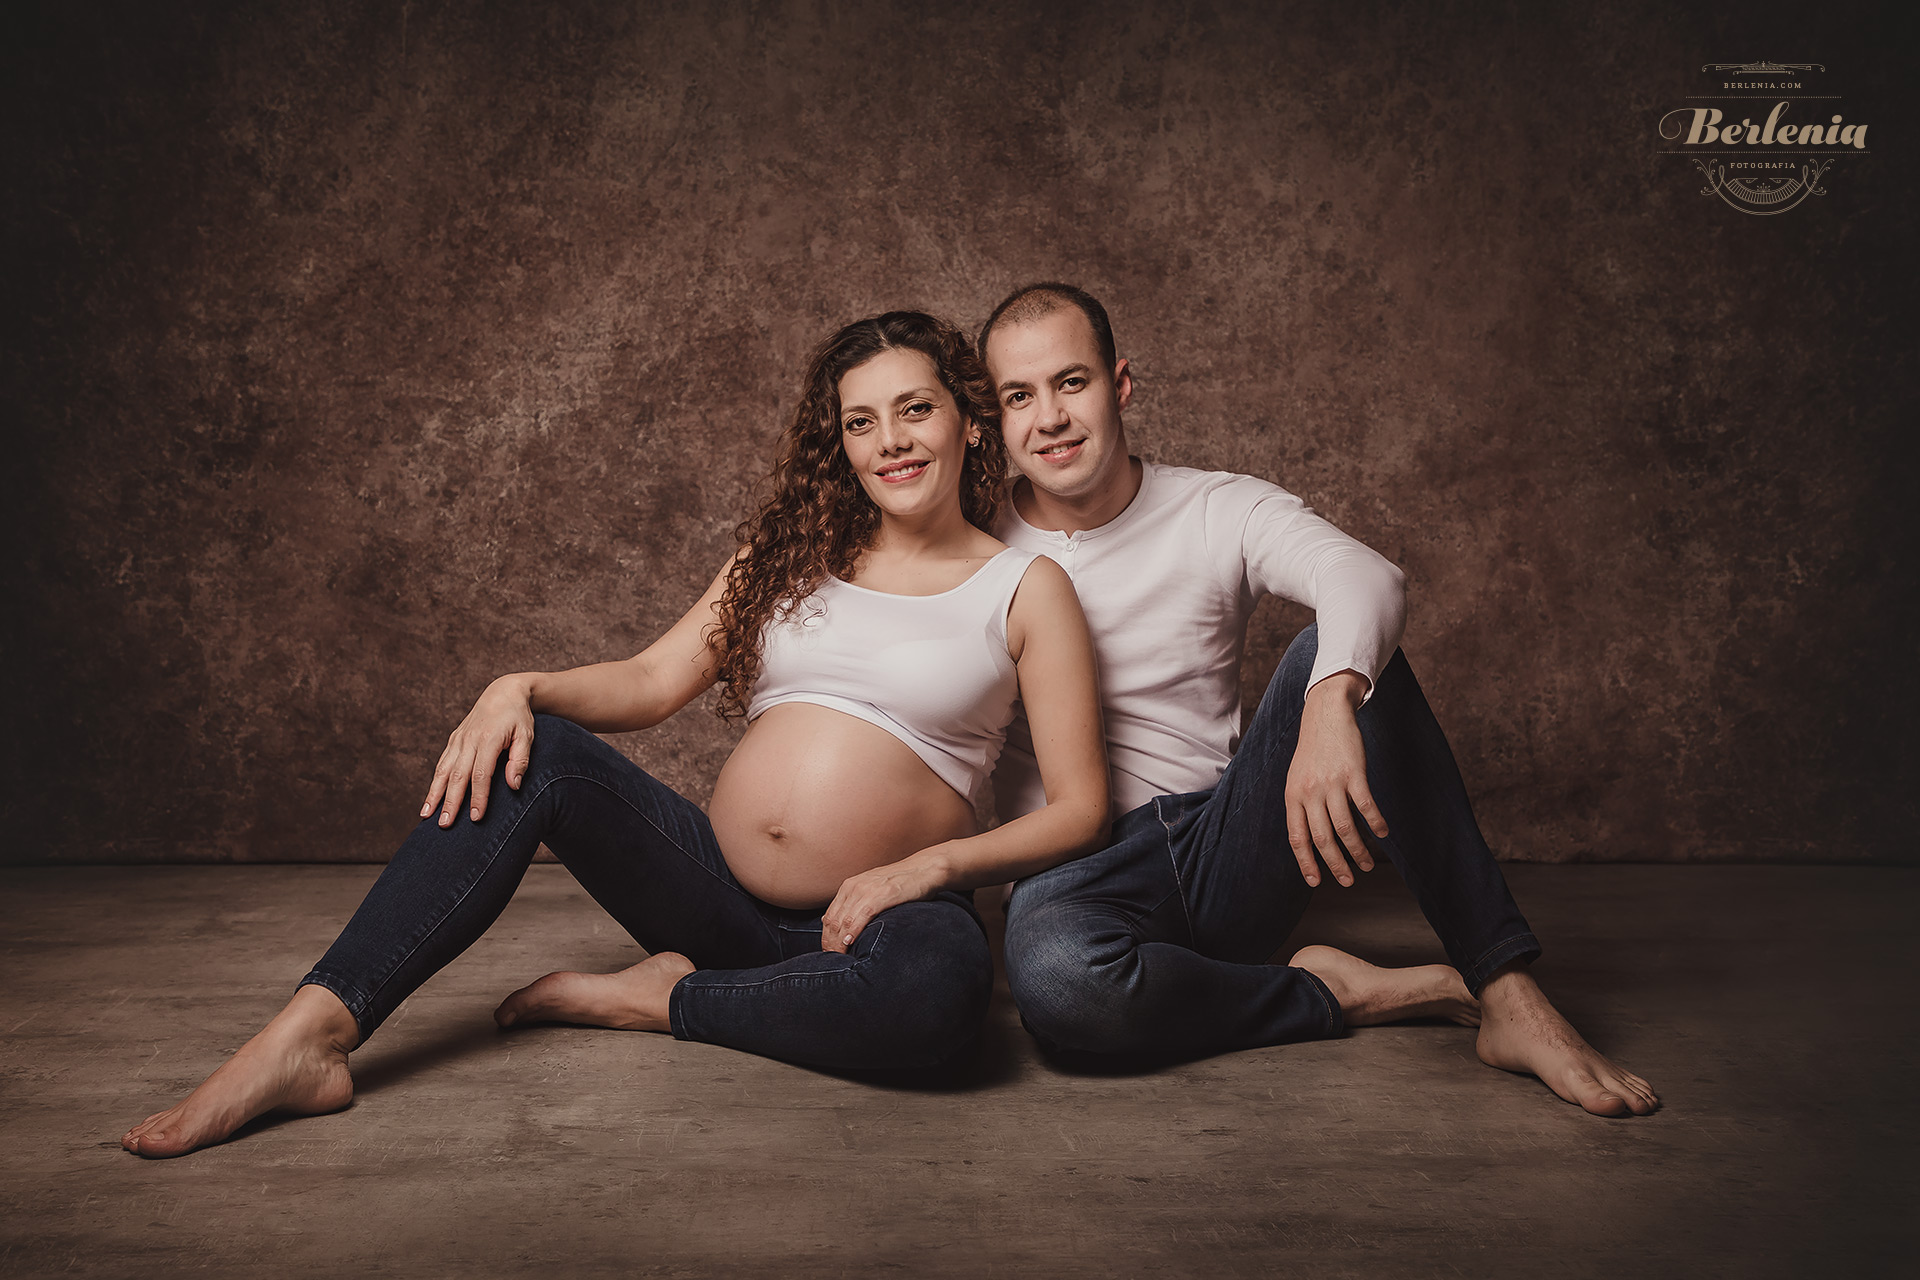 Fotografía de embarazo en pareja - Sesión de fotos en Villa Urquiza, CABA, Buenos Aires, Argentina - Berlenia Fotografía - 11